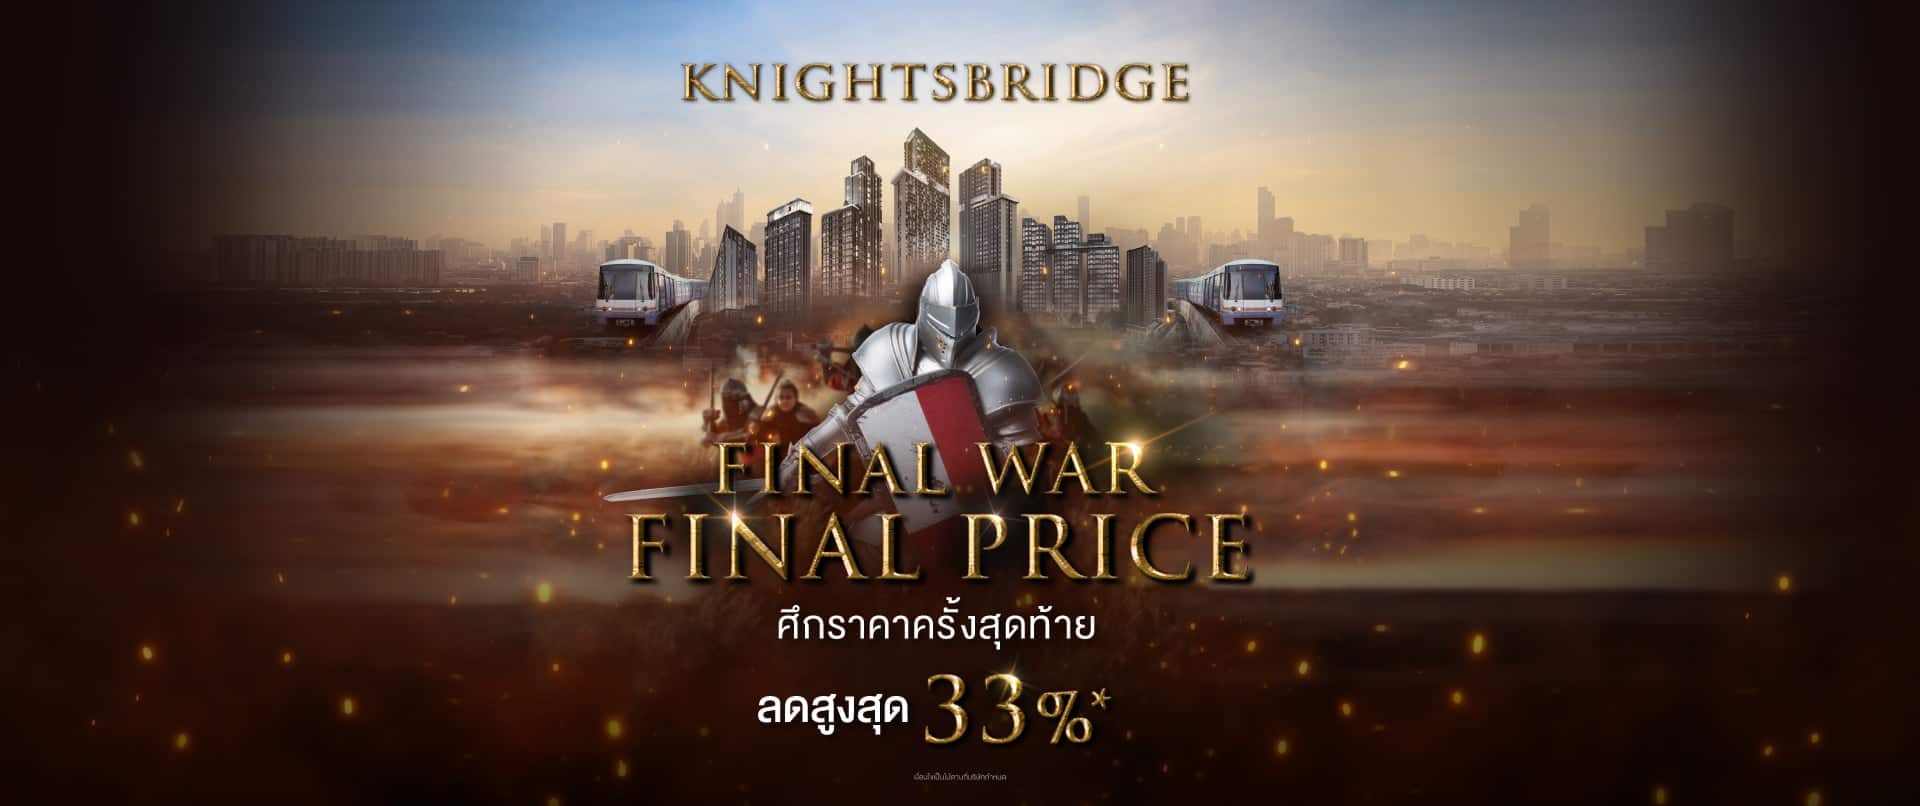 Final war Final Price